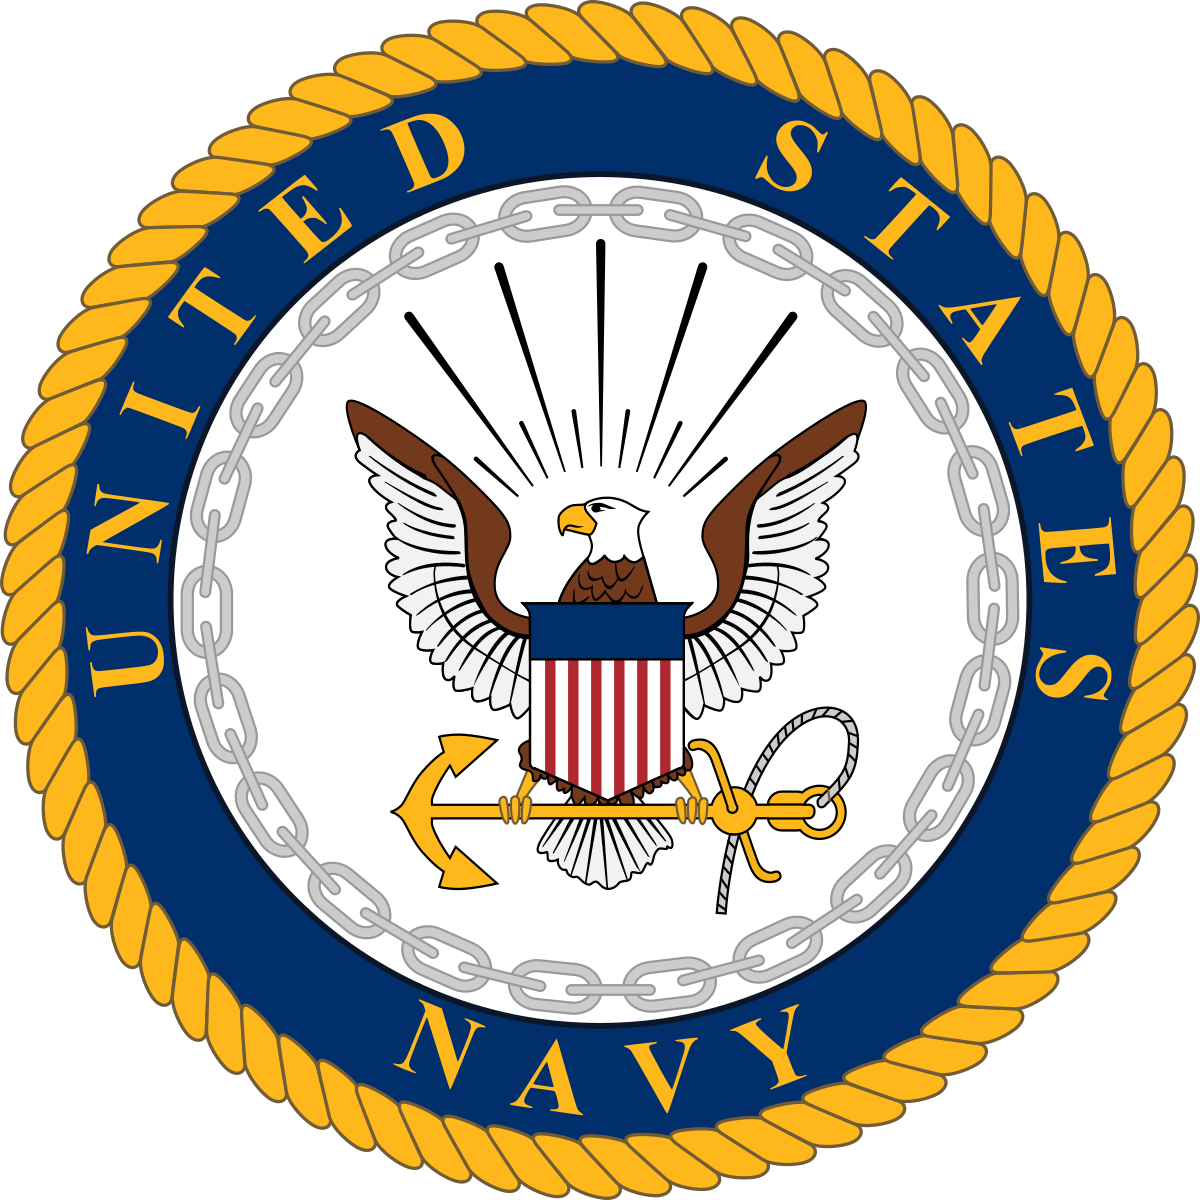 U.S. Navy logo